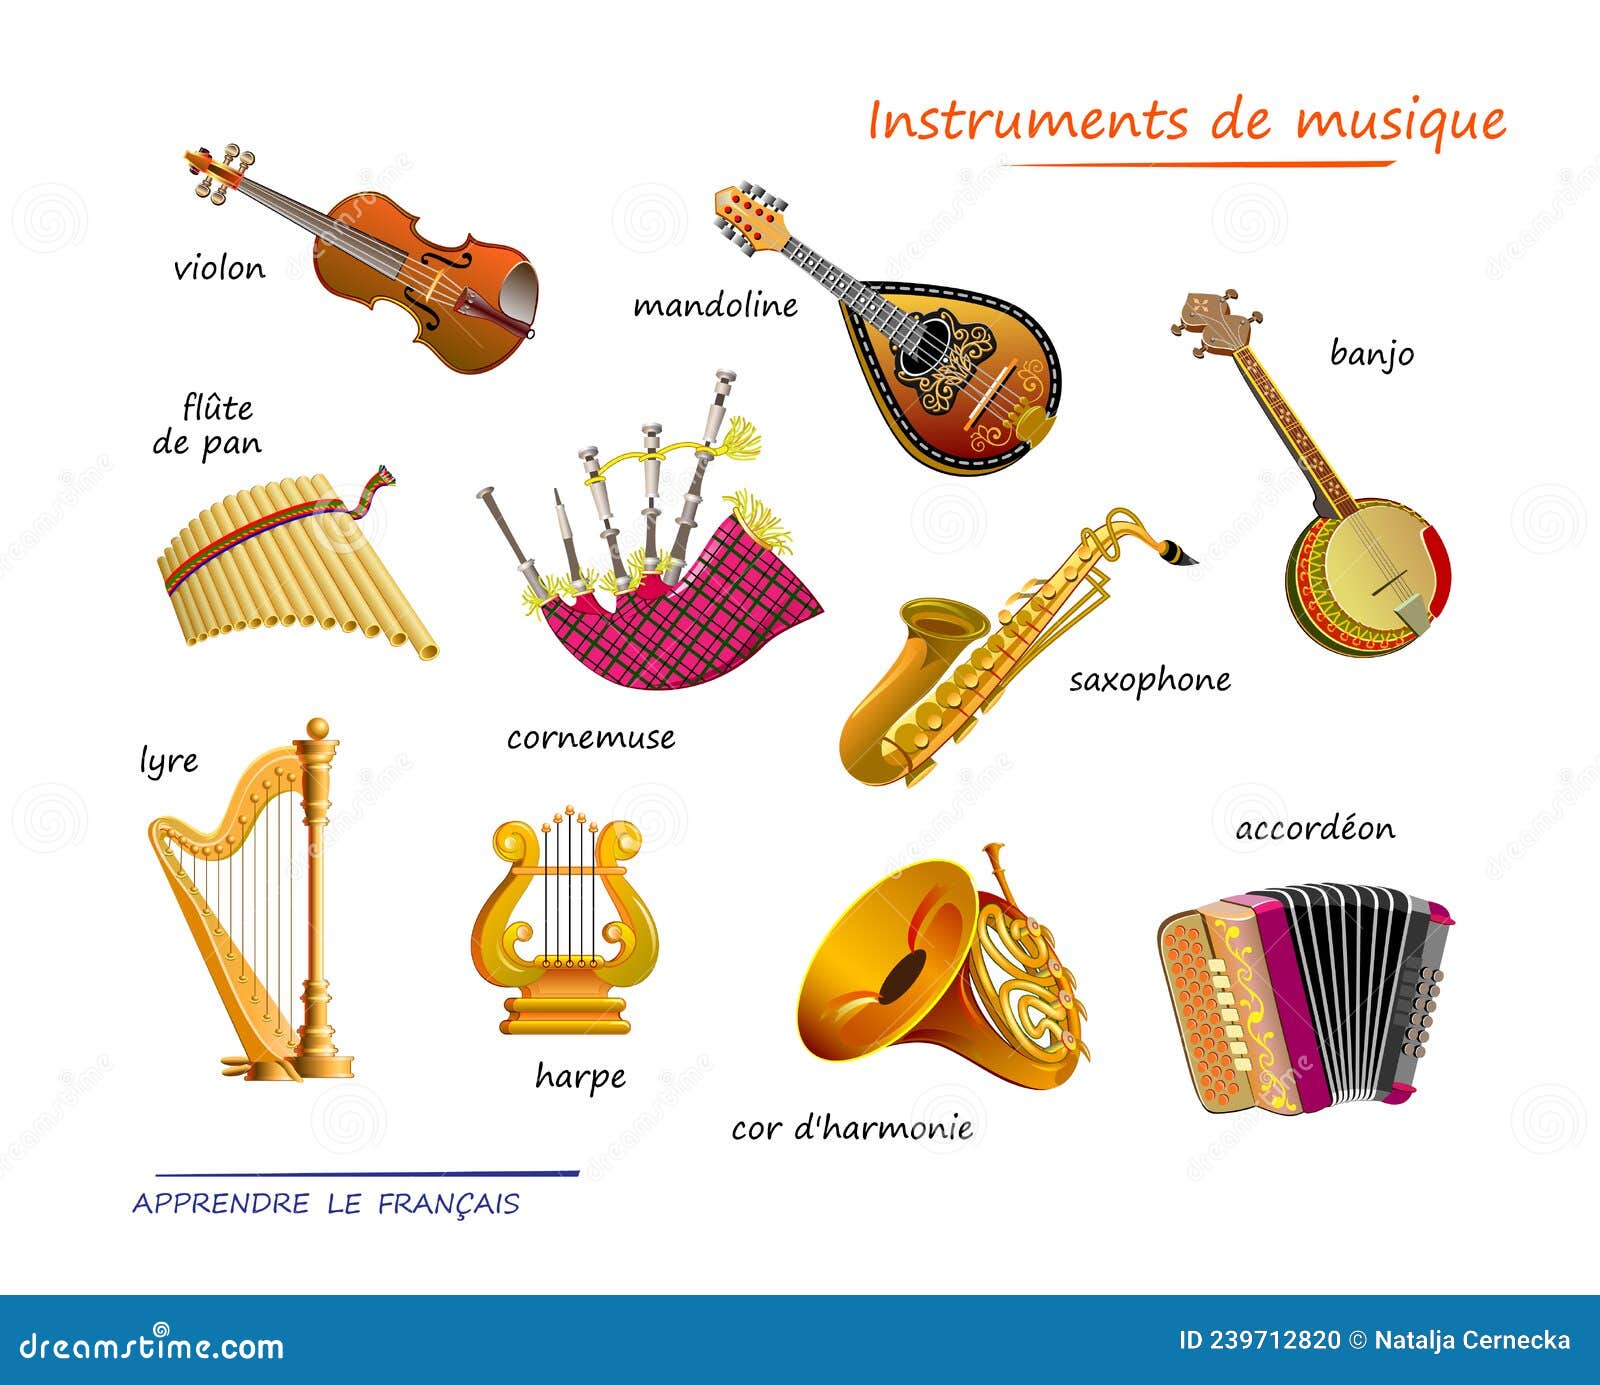 Quels sont les instruments de musique les plus faciles à apprendre ? -  Apprentus France